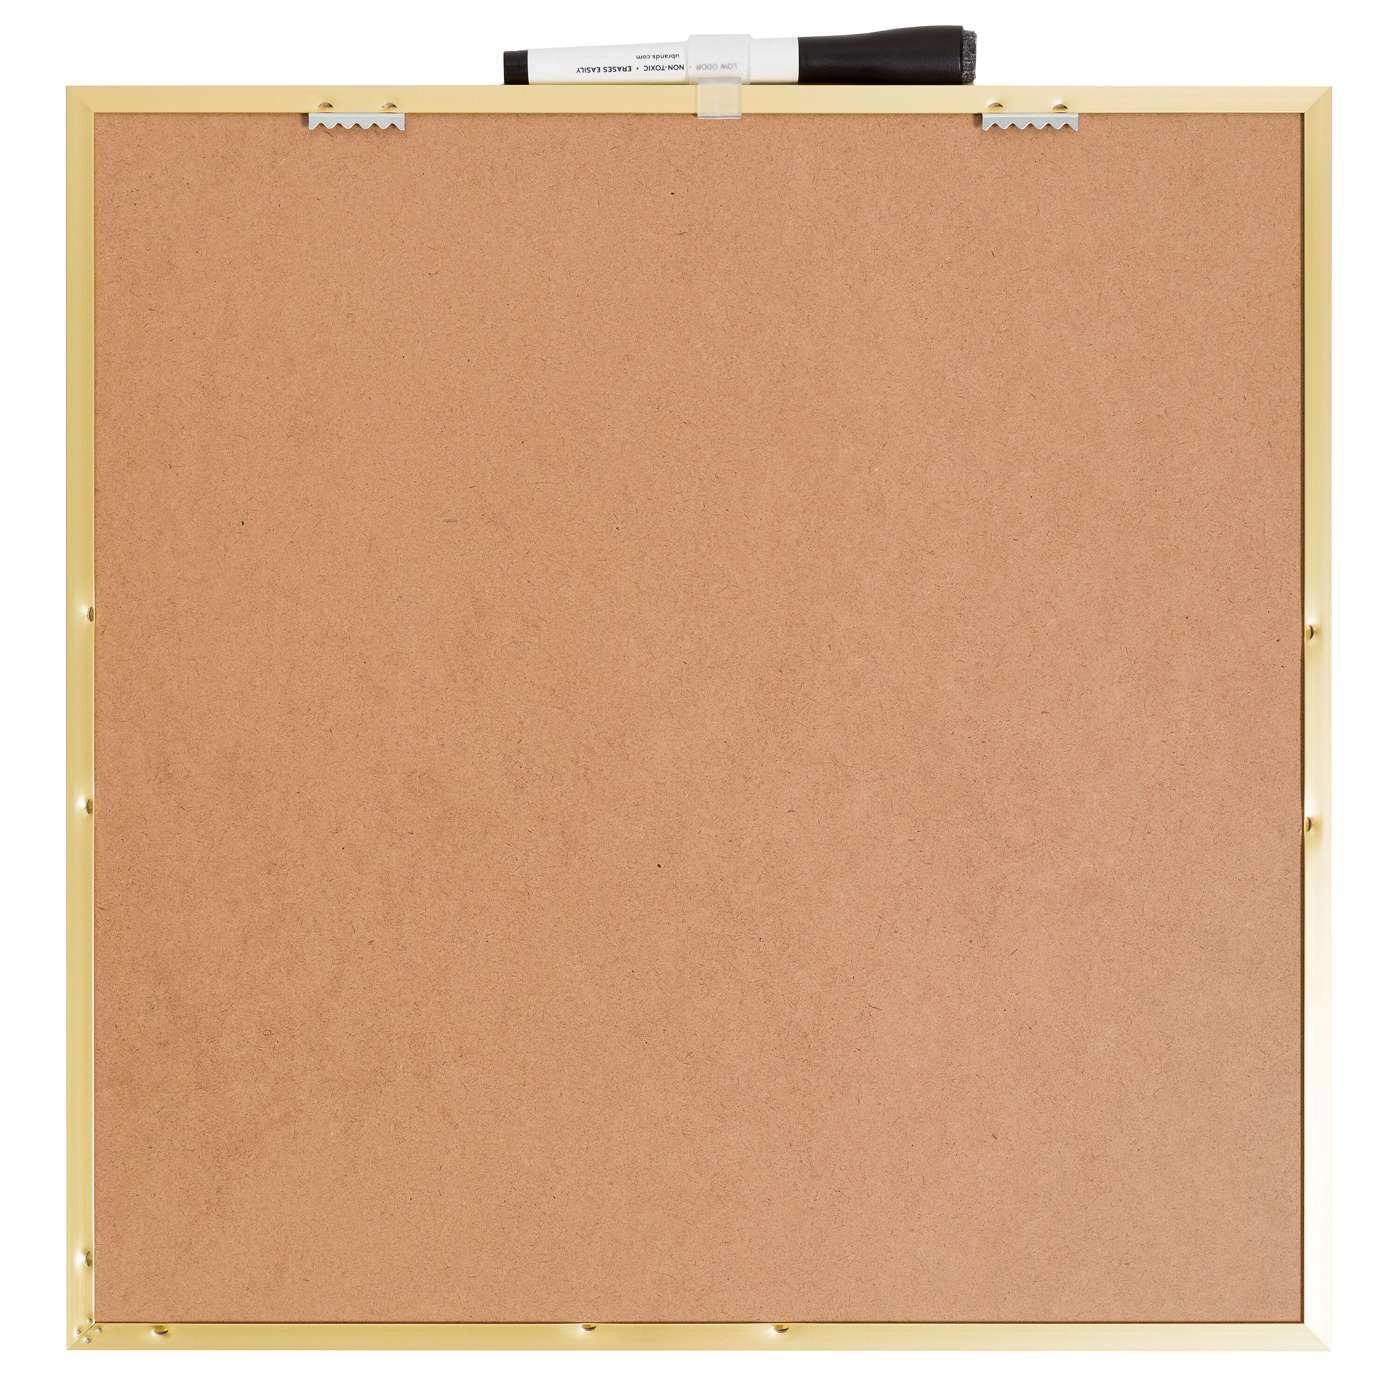 U Brands Gold Metal Frame Square Dry Erase Board; image 3 of 4